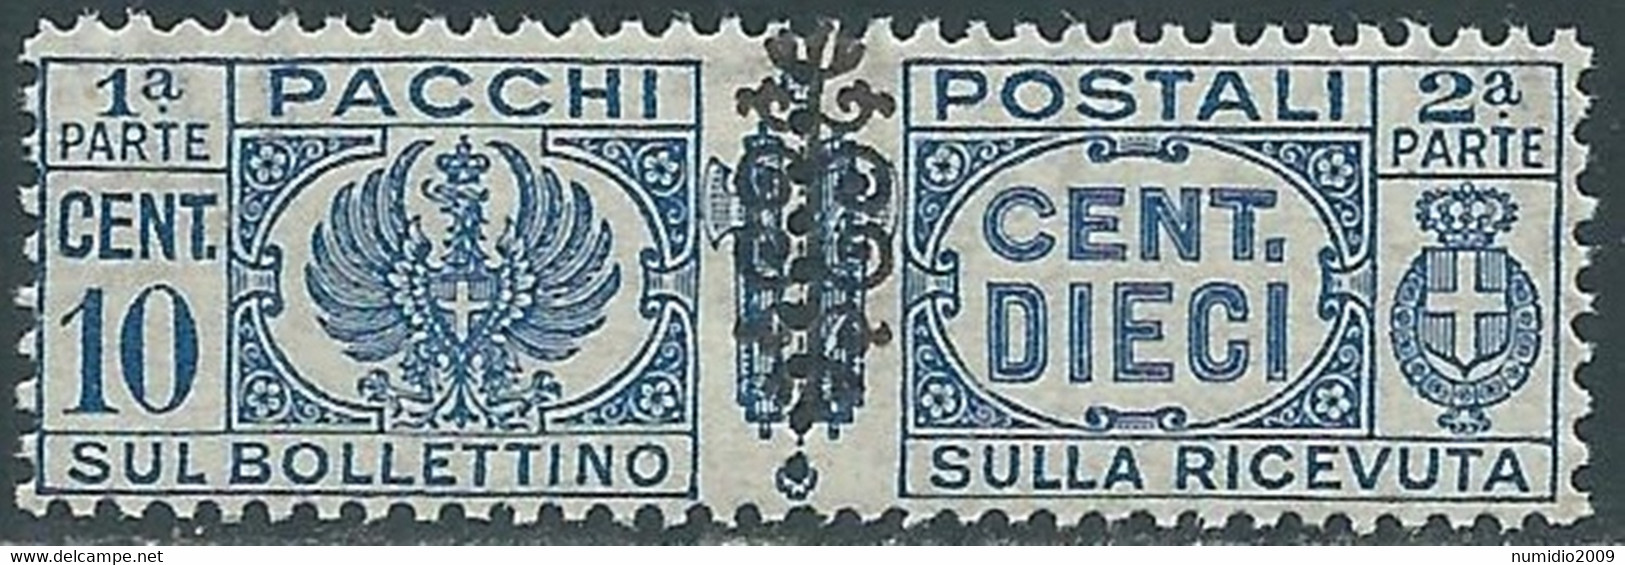 1945 LUOGOTENENZA PACCHI POSTALI 10 CENT MNH ** - CZ19-2 - Paketmarken